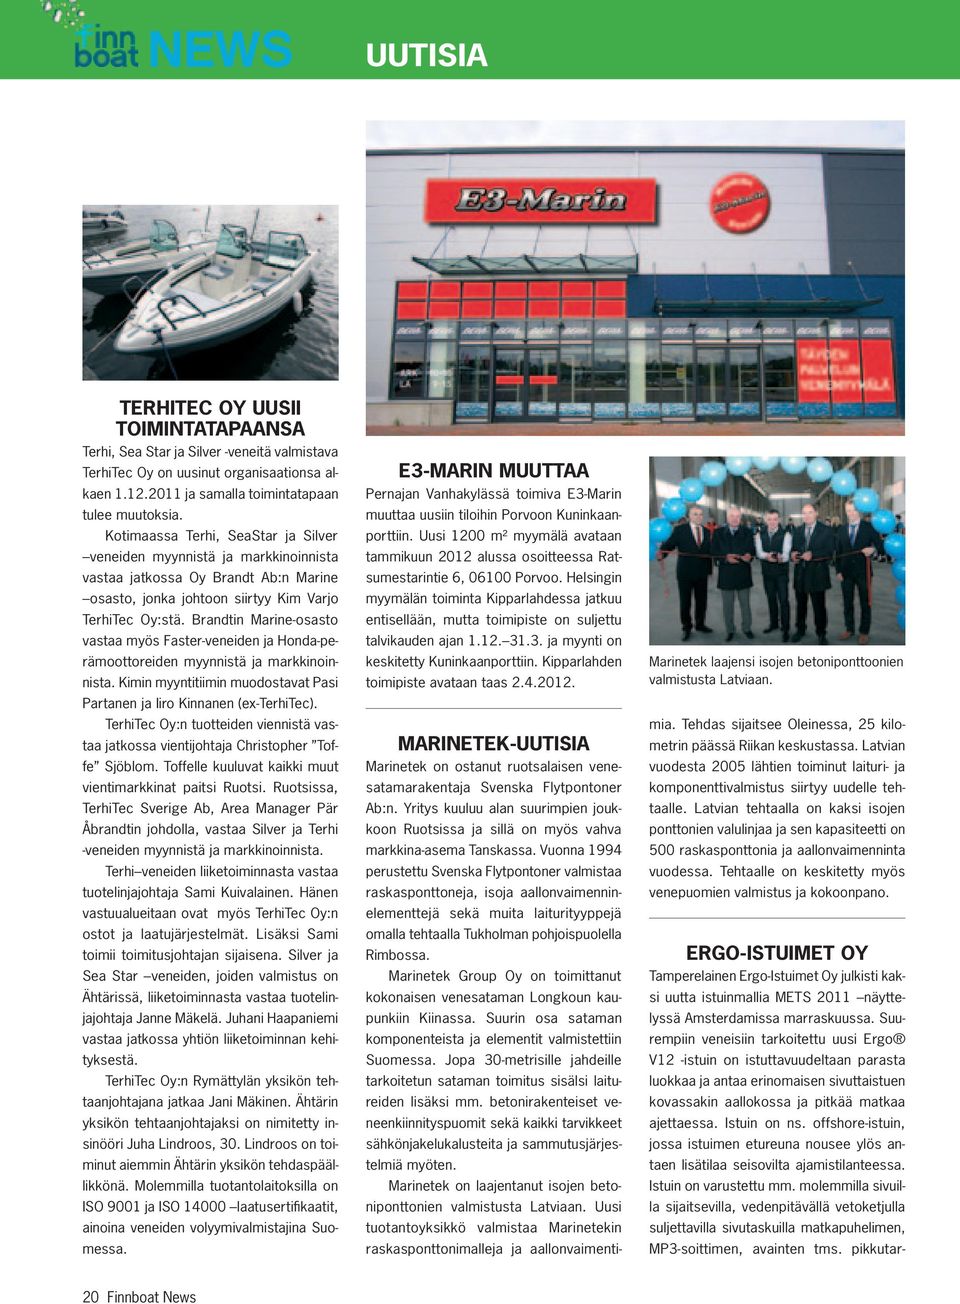 Brandtin Marine-osasto vastaa myös Faster-veneiden ja Honda-perämoottoreiden myynnistä ja markkinoinnista. Kimin myyntitiimin muodostavat Pasi Partanen ja Iiro Kinnanen (ex-terhitec).